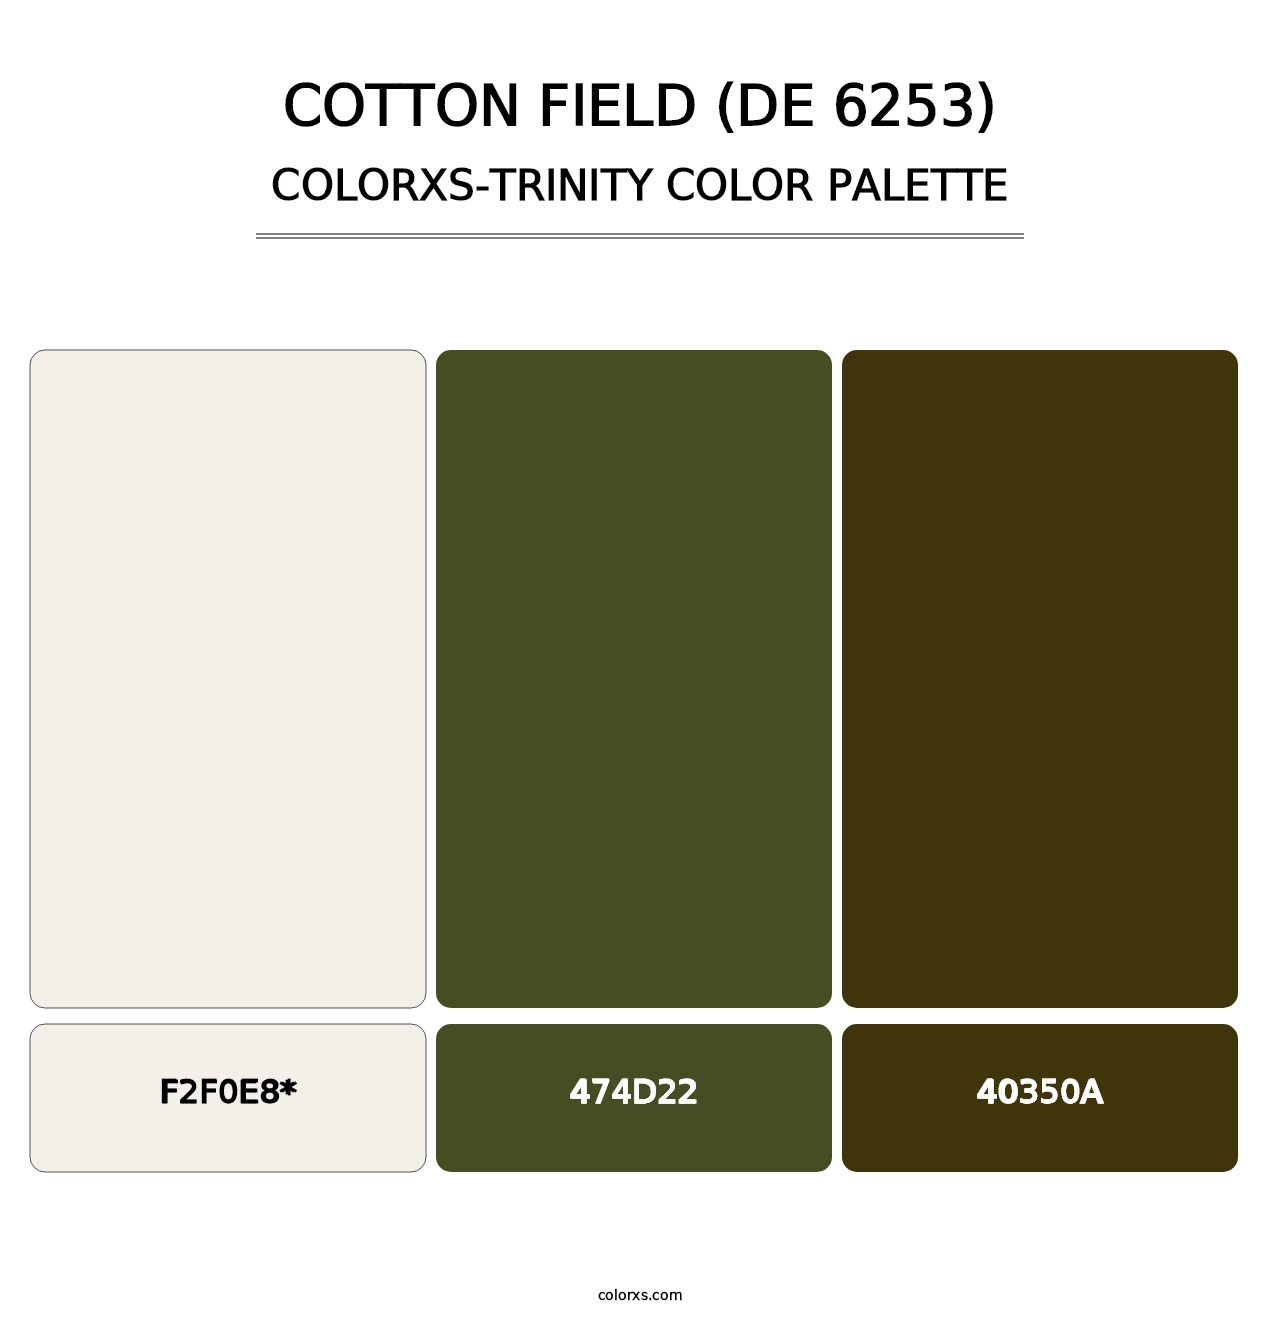 Cotton Field (DE 6253) - Colorxs Trinity Palette